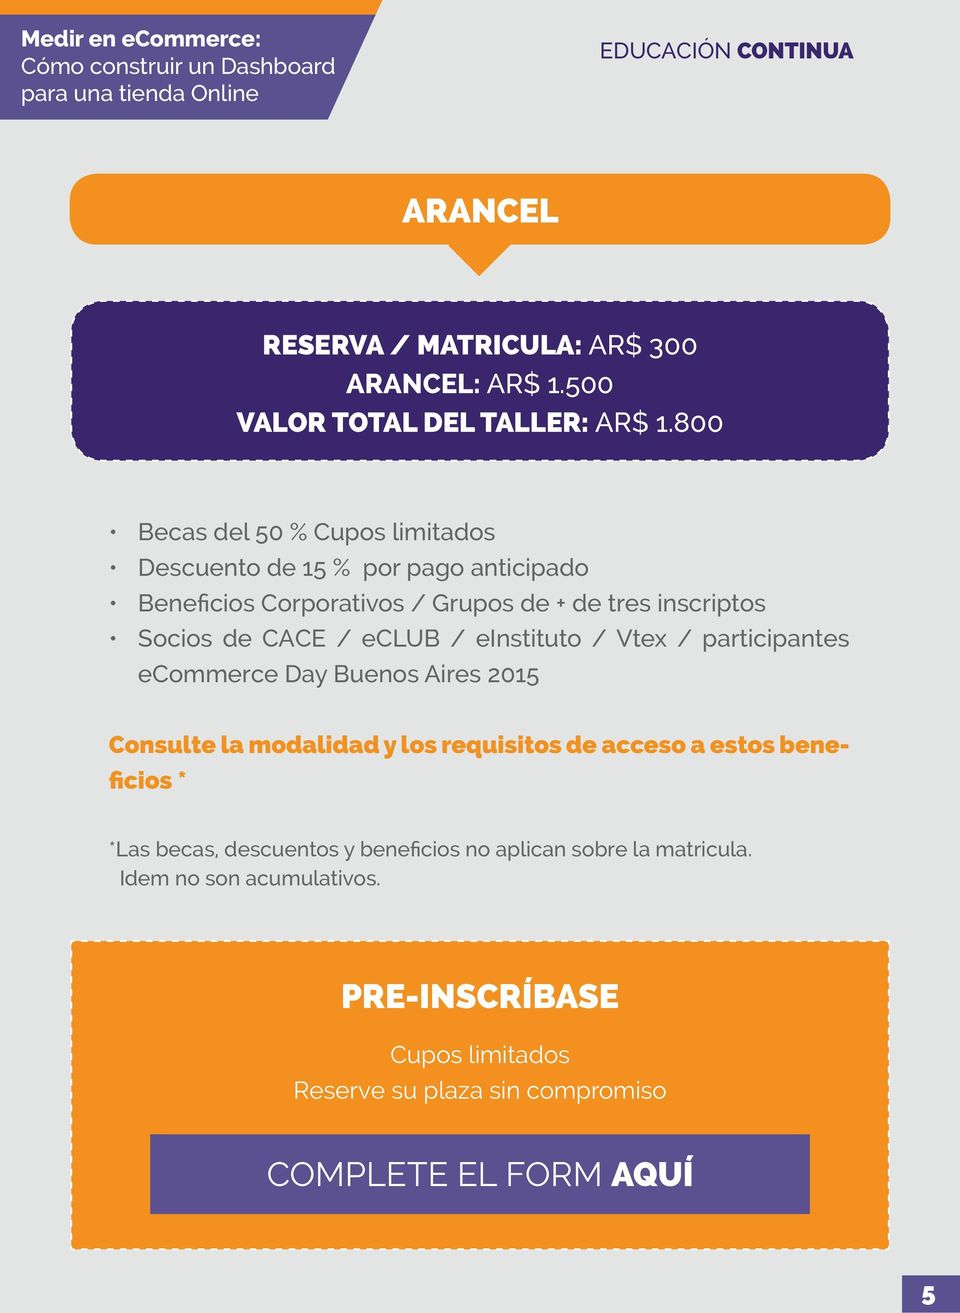 CACE / eclub / einstituto / Vtex / participantes ecommerce Day Buenos Aires 2015 Consulte la modalidad y los requisitos de acceso a estos